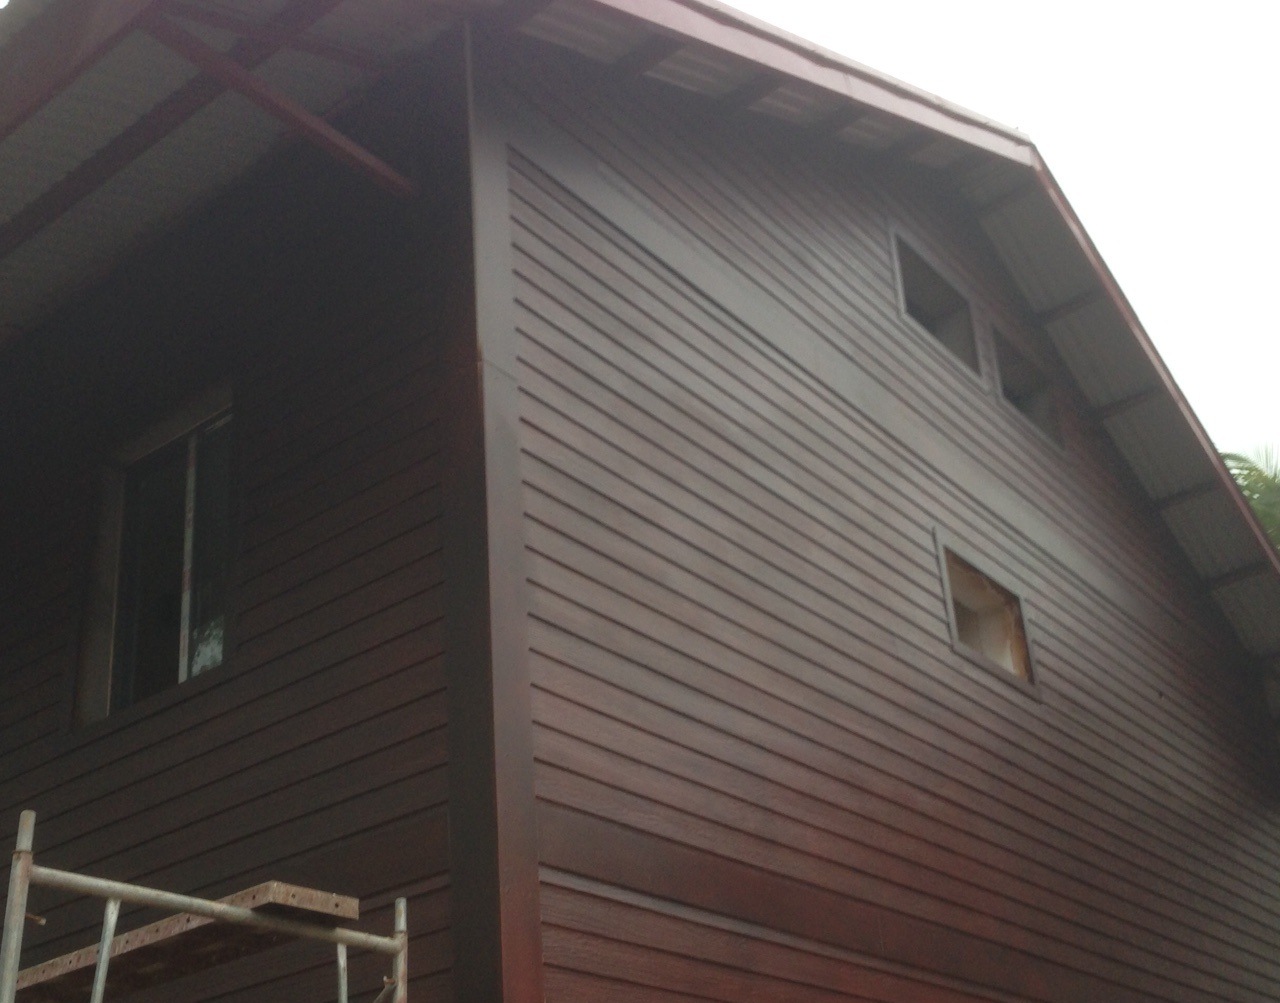 Tấm trần xi măng vân gỗ Smartwood, vật liệu thi công trần nhà toàn diện